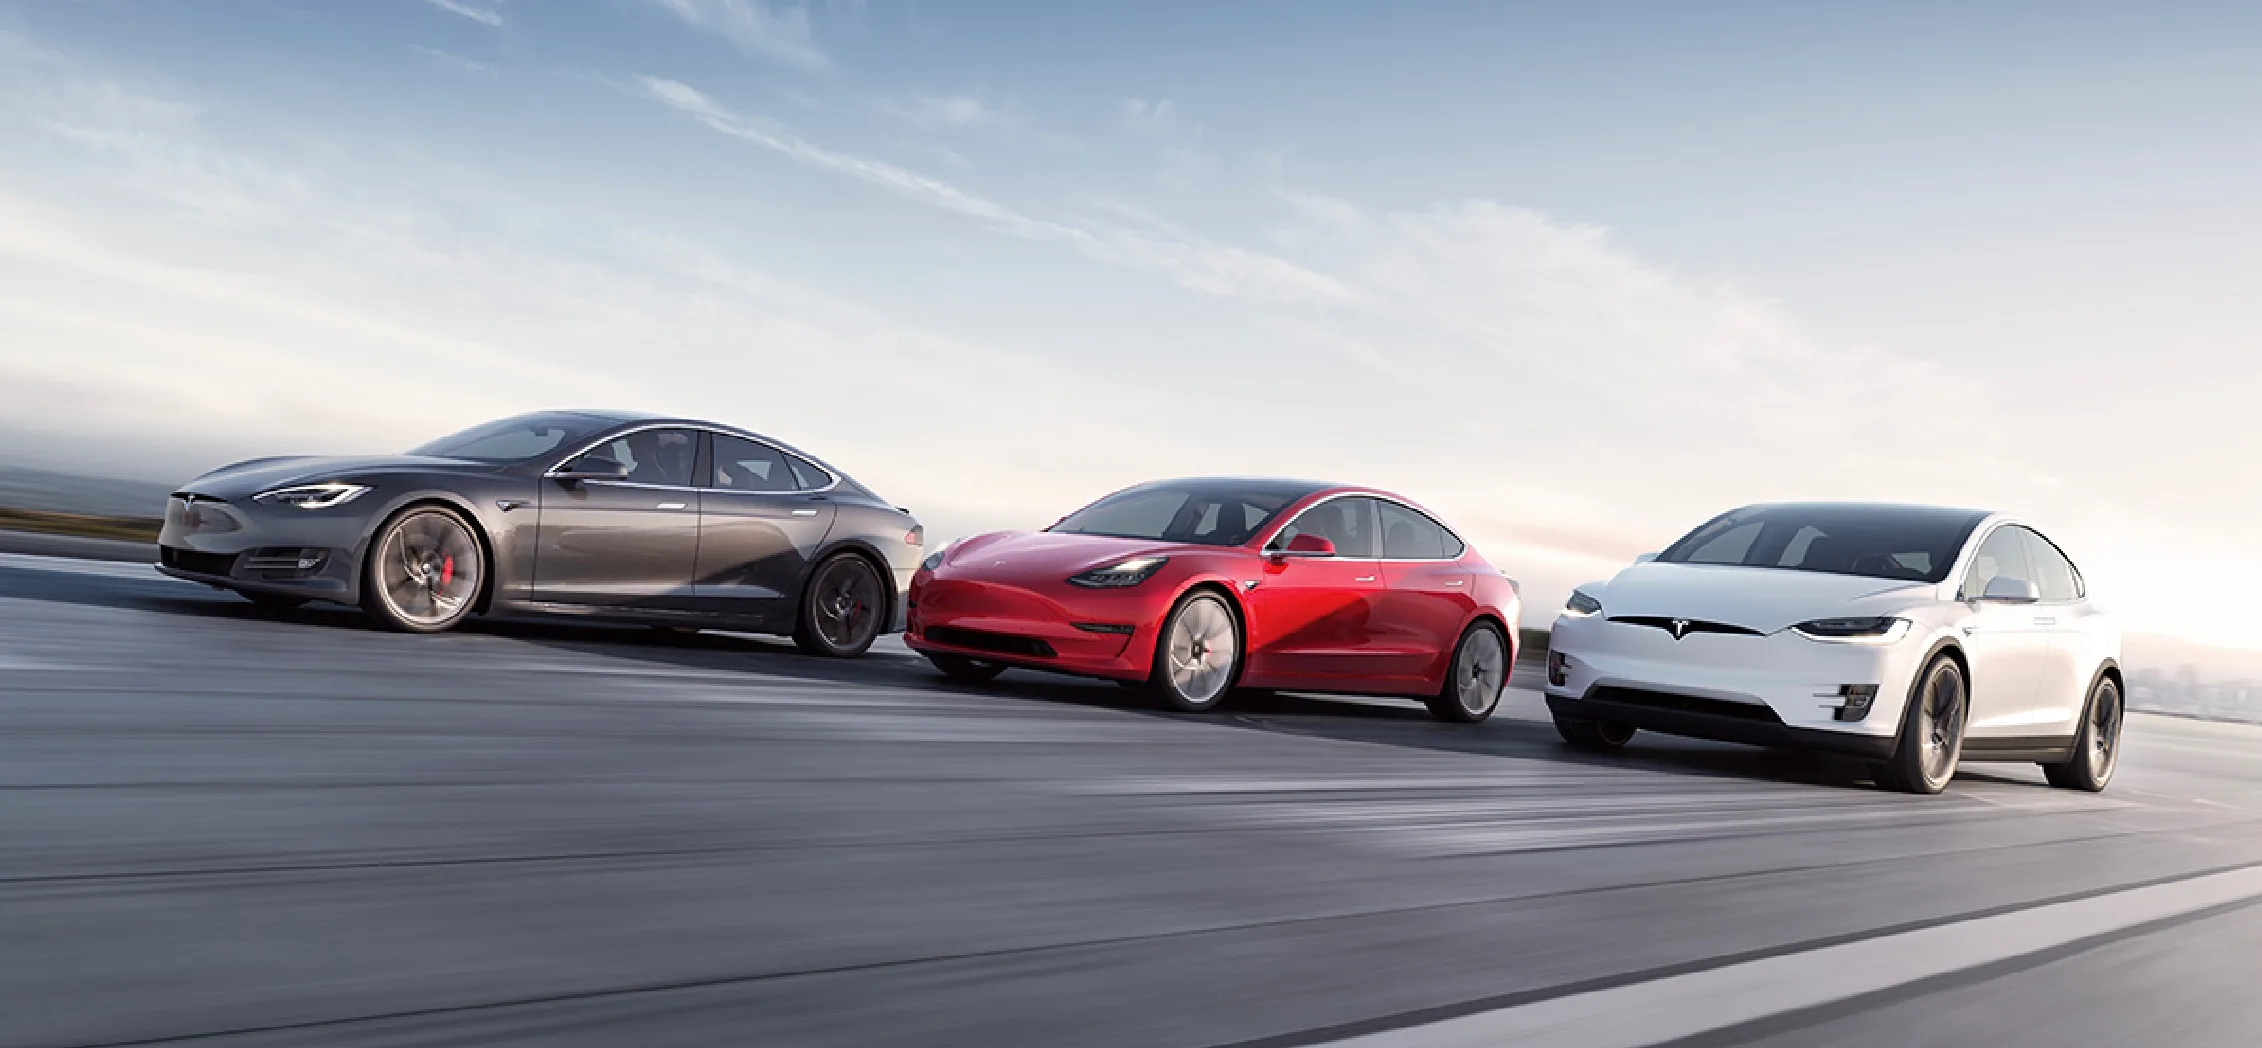 Diam-Diam Tesla Akan Menghadirkan Mobil Listrik Dengan Harga Terjangkau, Ini Bocorannya